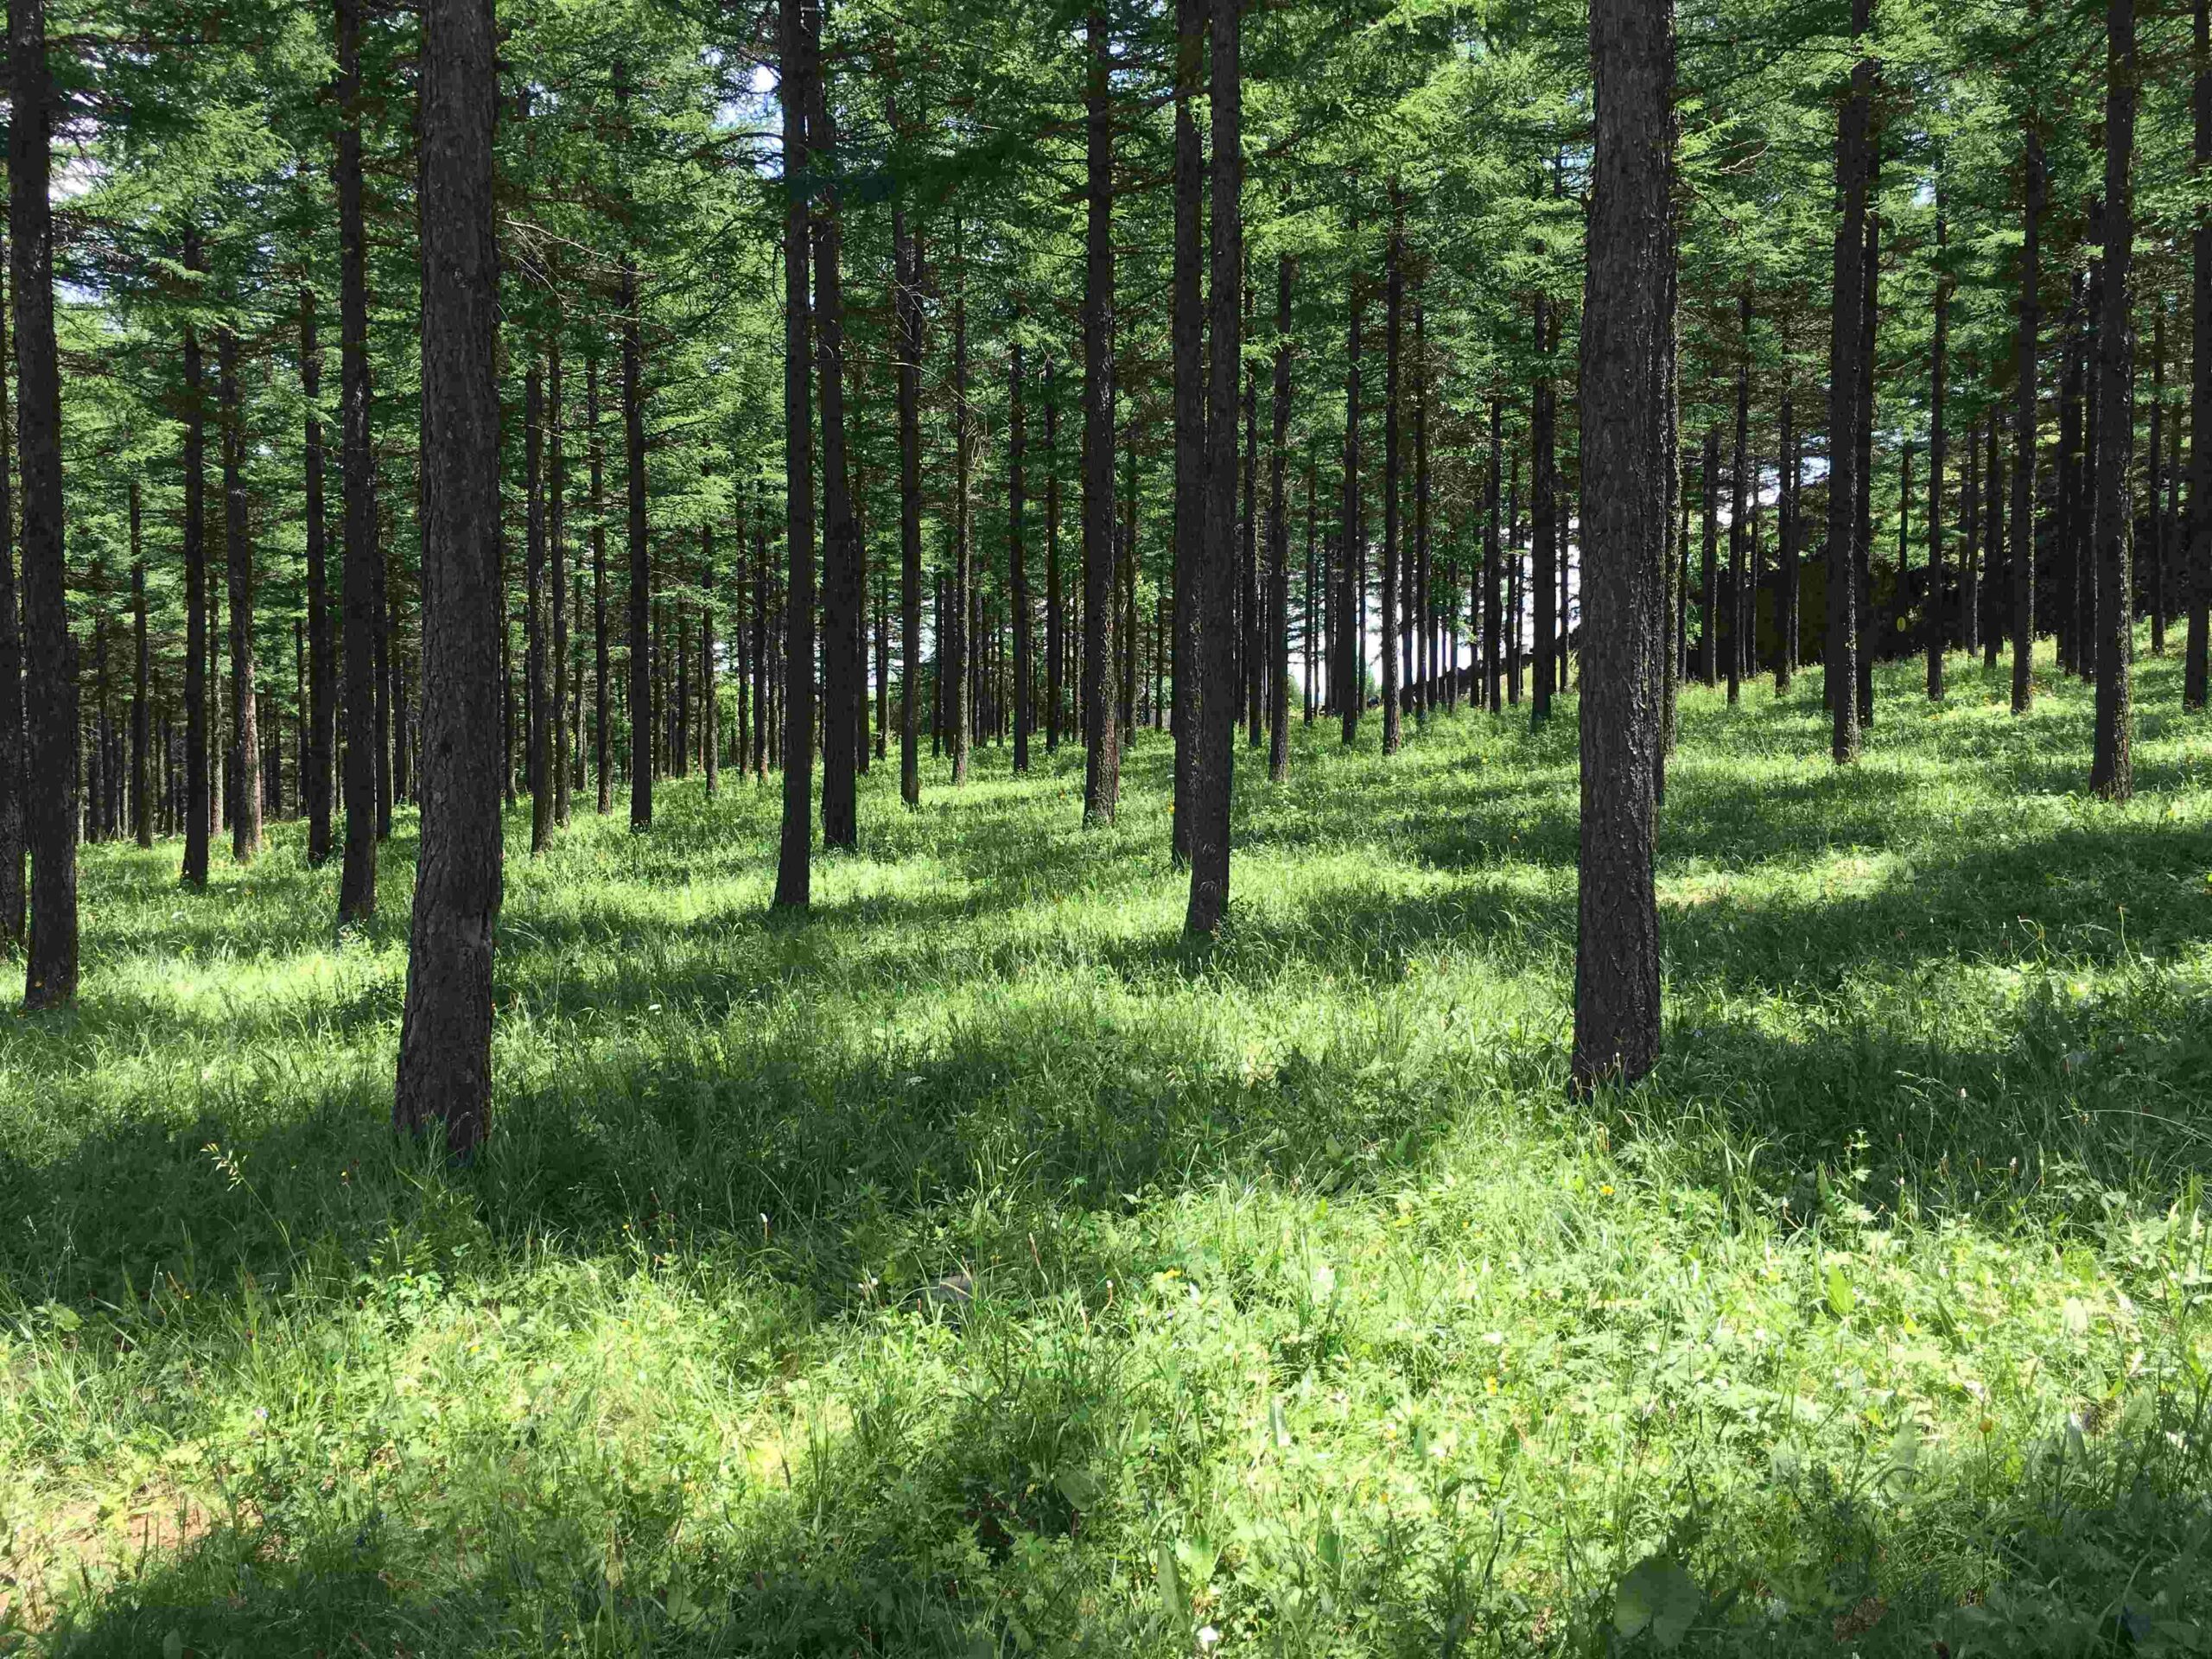 Saihanba, el bosque artificial más grande del mundo creado en un desierto Con el fin de beneficiar al medio ambiente, China ha creado el bosque artificial de Saihanba; hogar de más de 1,800 especies vegetales y animales.  https://larevistadelsureste.com